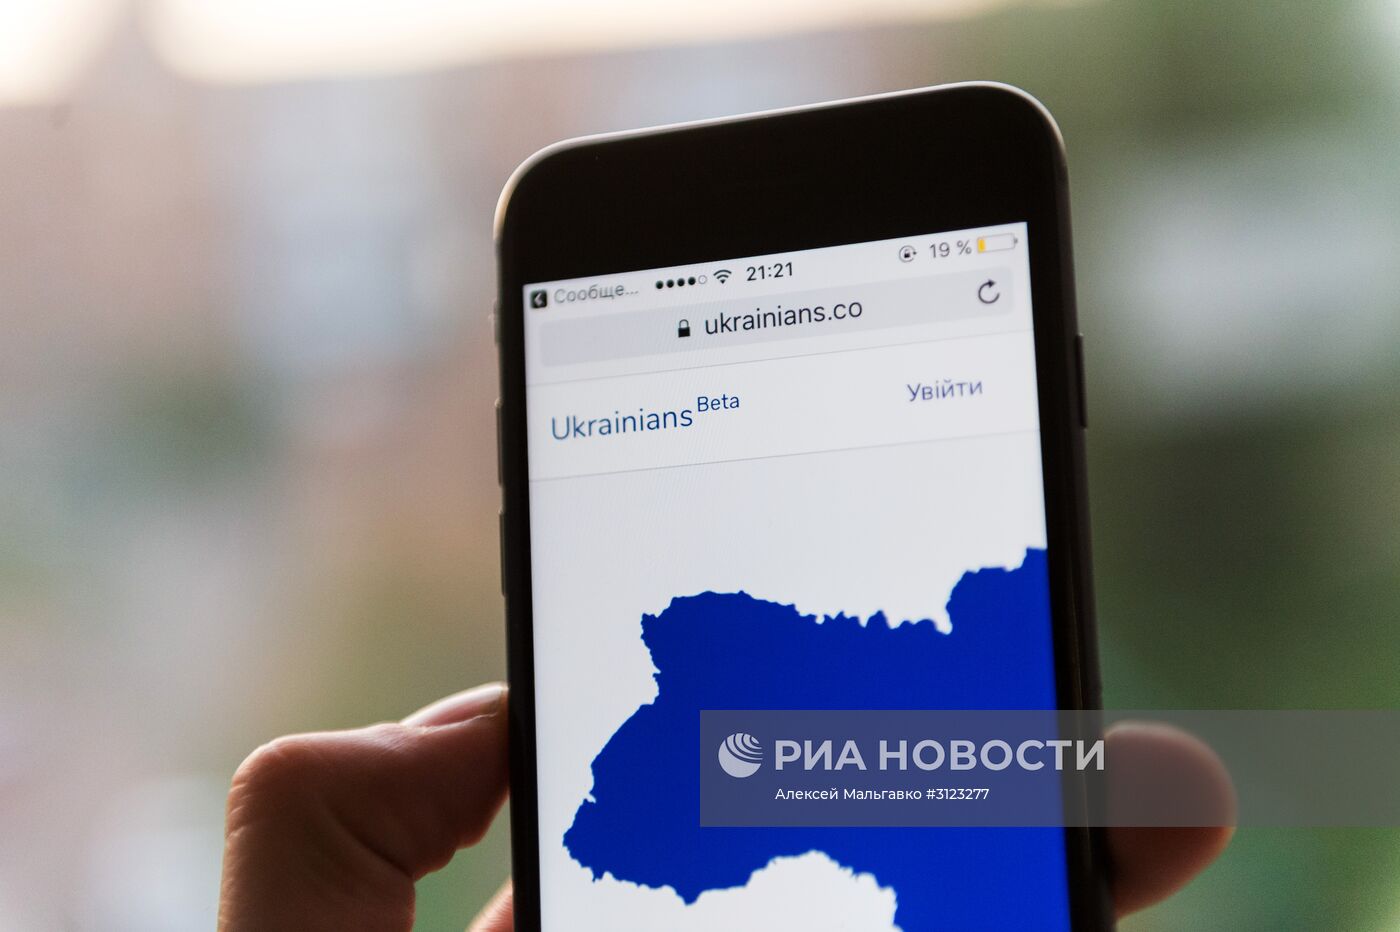 Открыта регистрация в новой украинской социальной сети Ukrainians